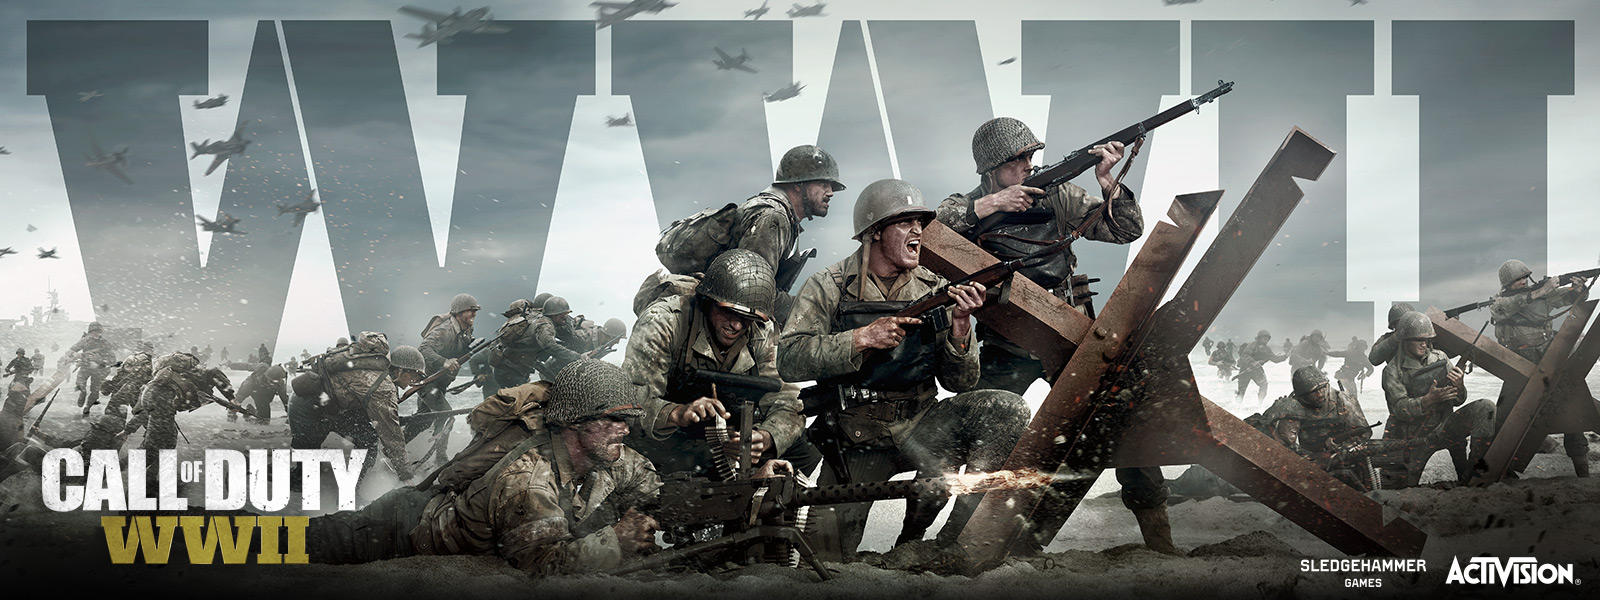 Call of Duty WWII analizamos el regreso a los orígenes de la franquicia